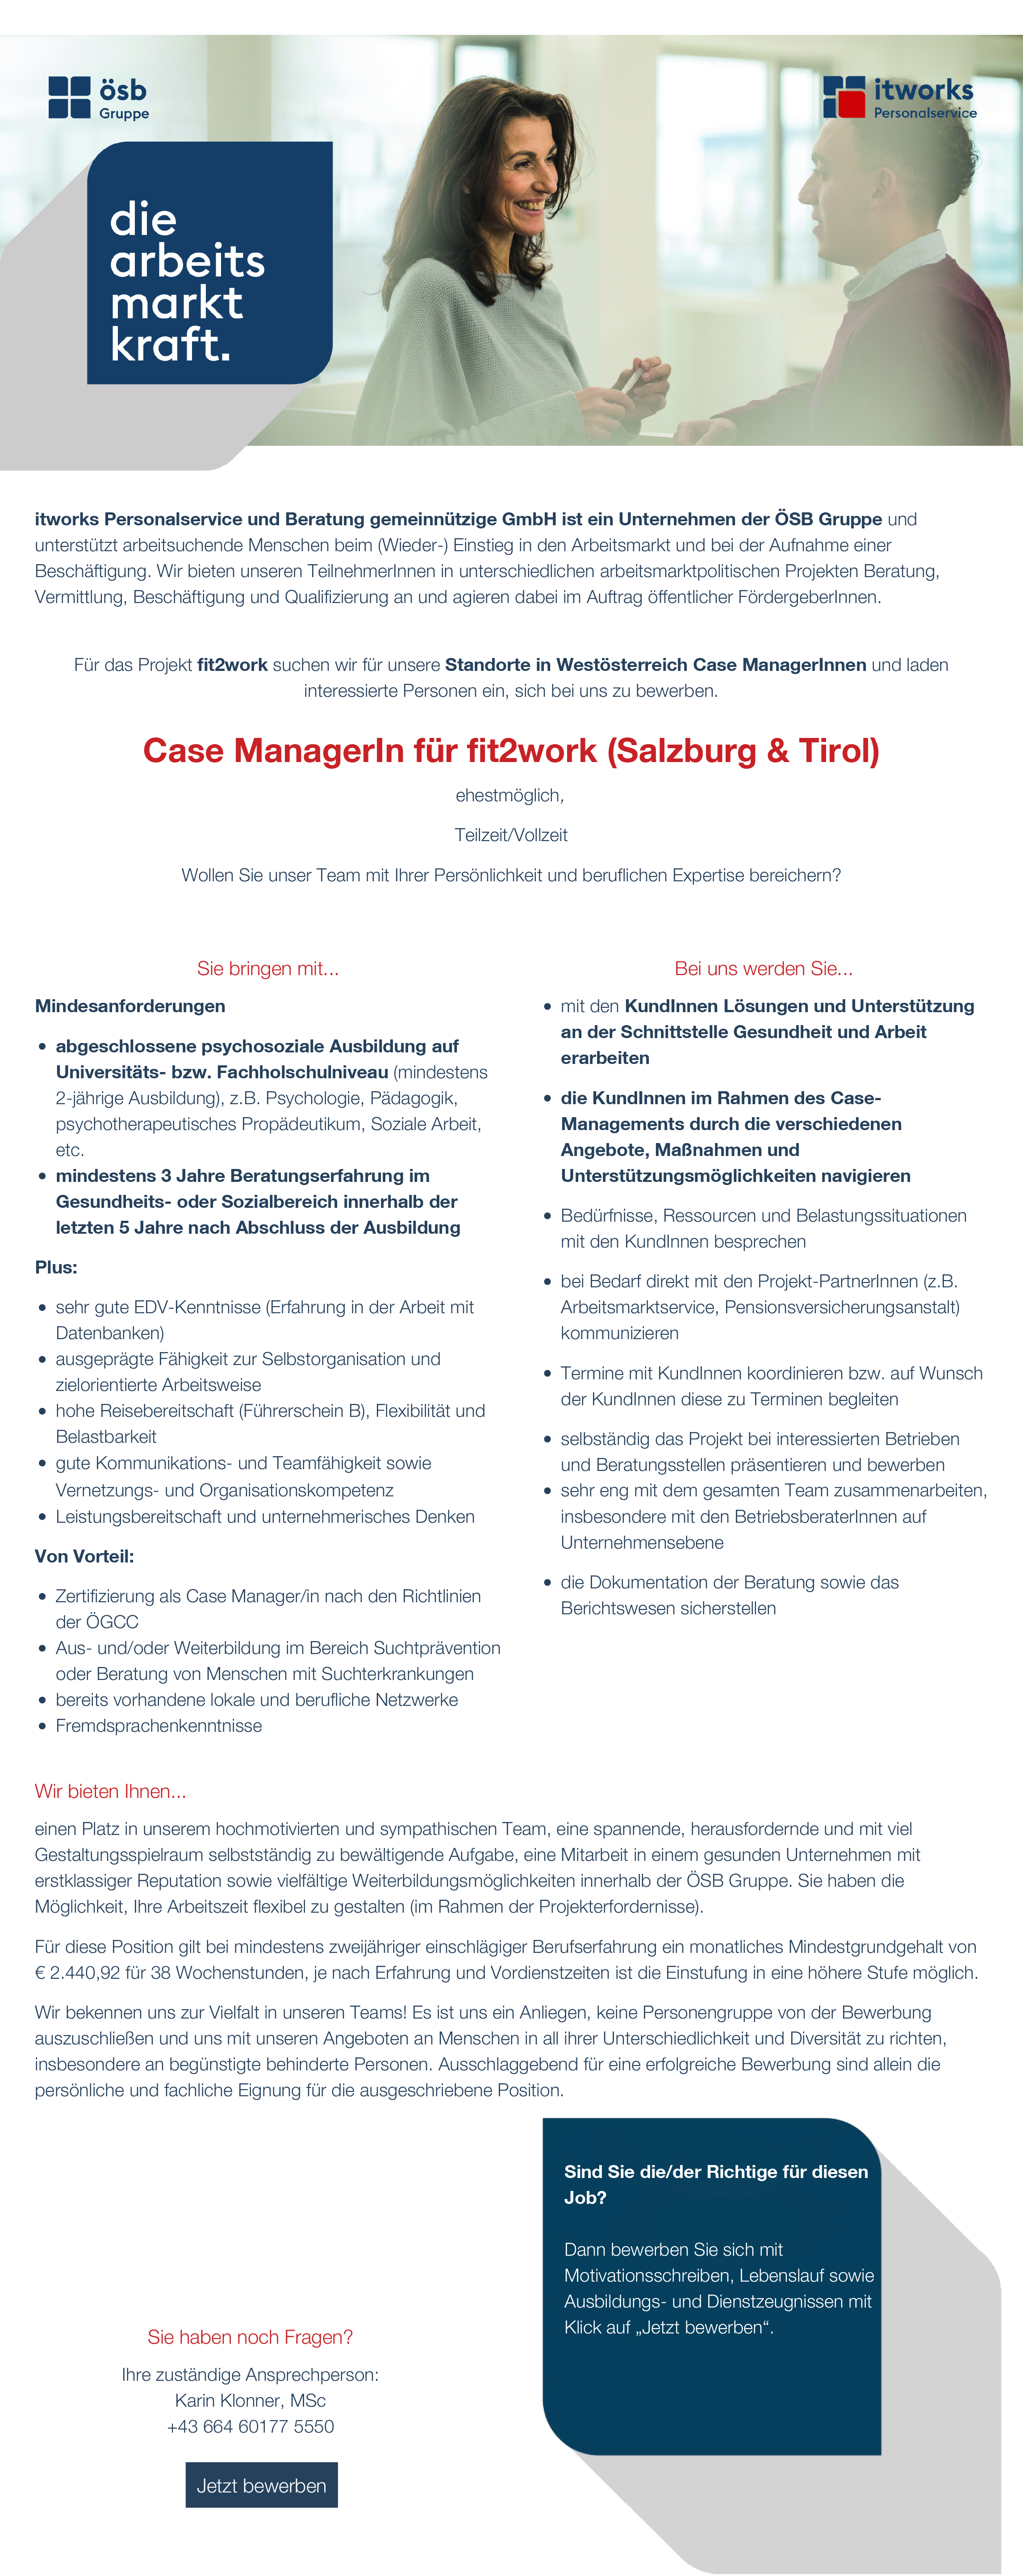 Case ManagerIn für fit2work (Salzburg & Tirol)